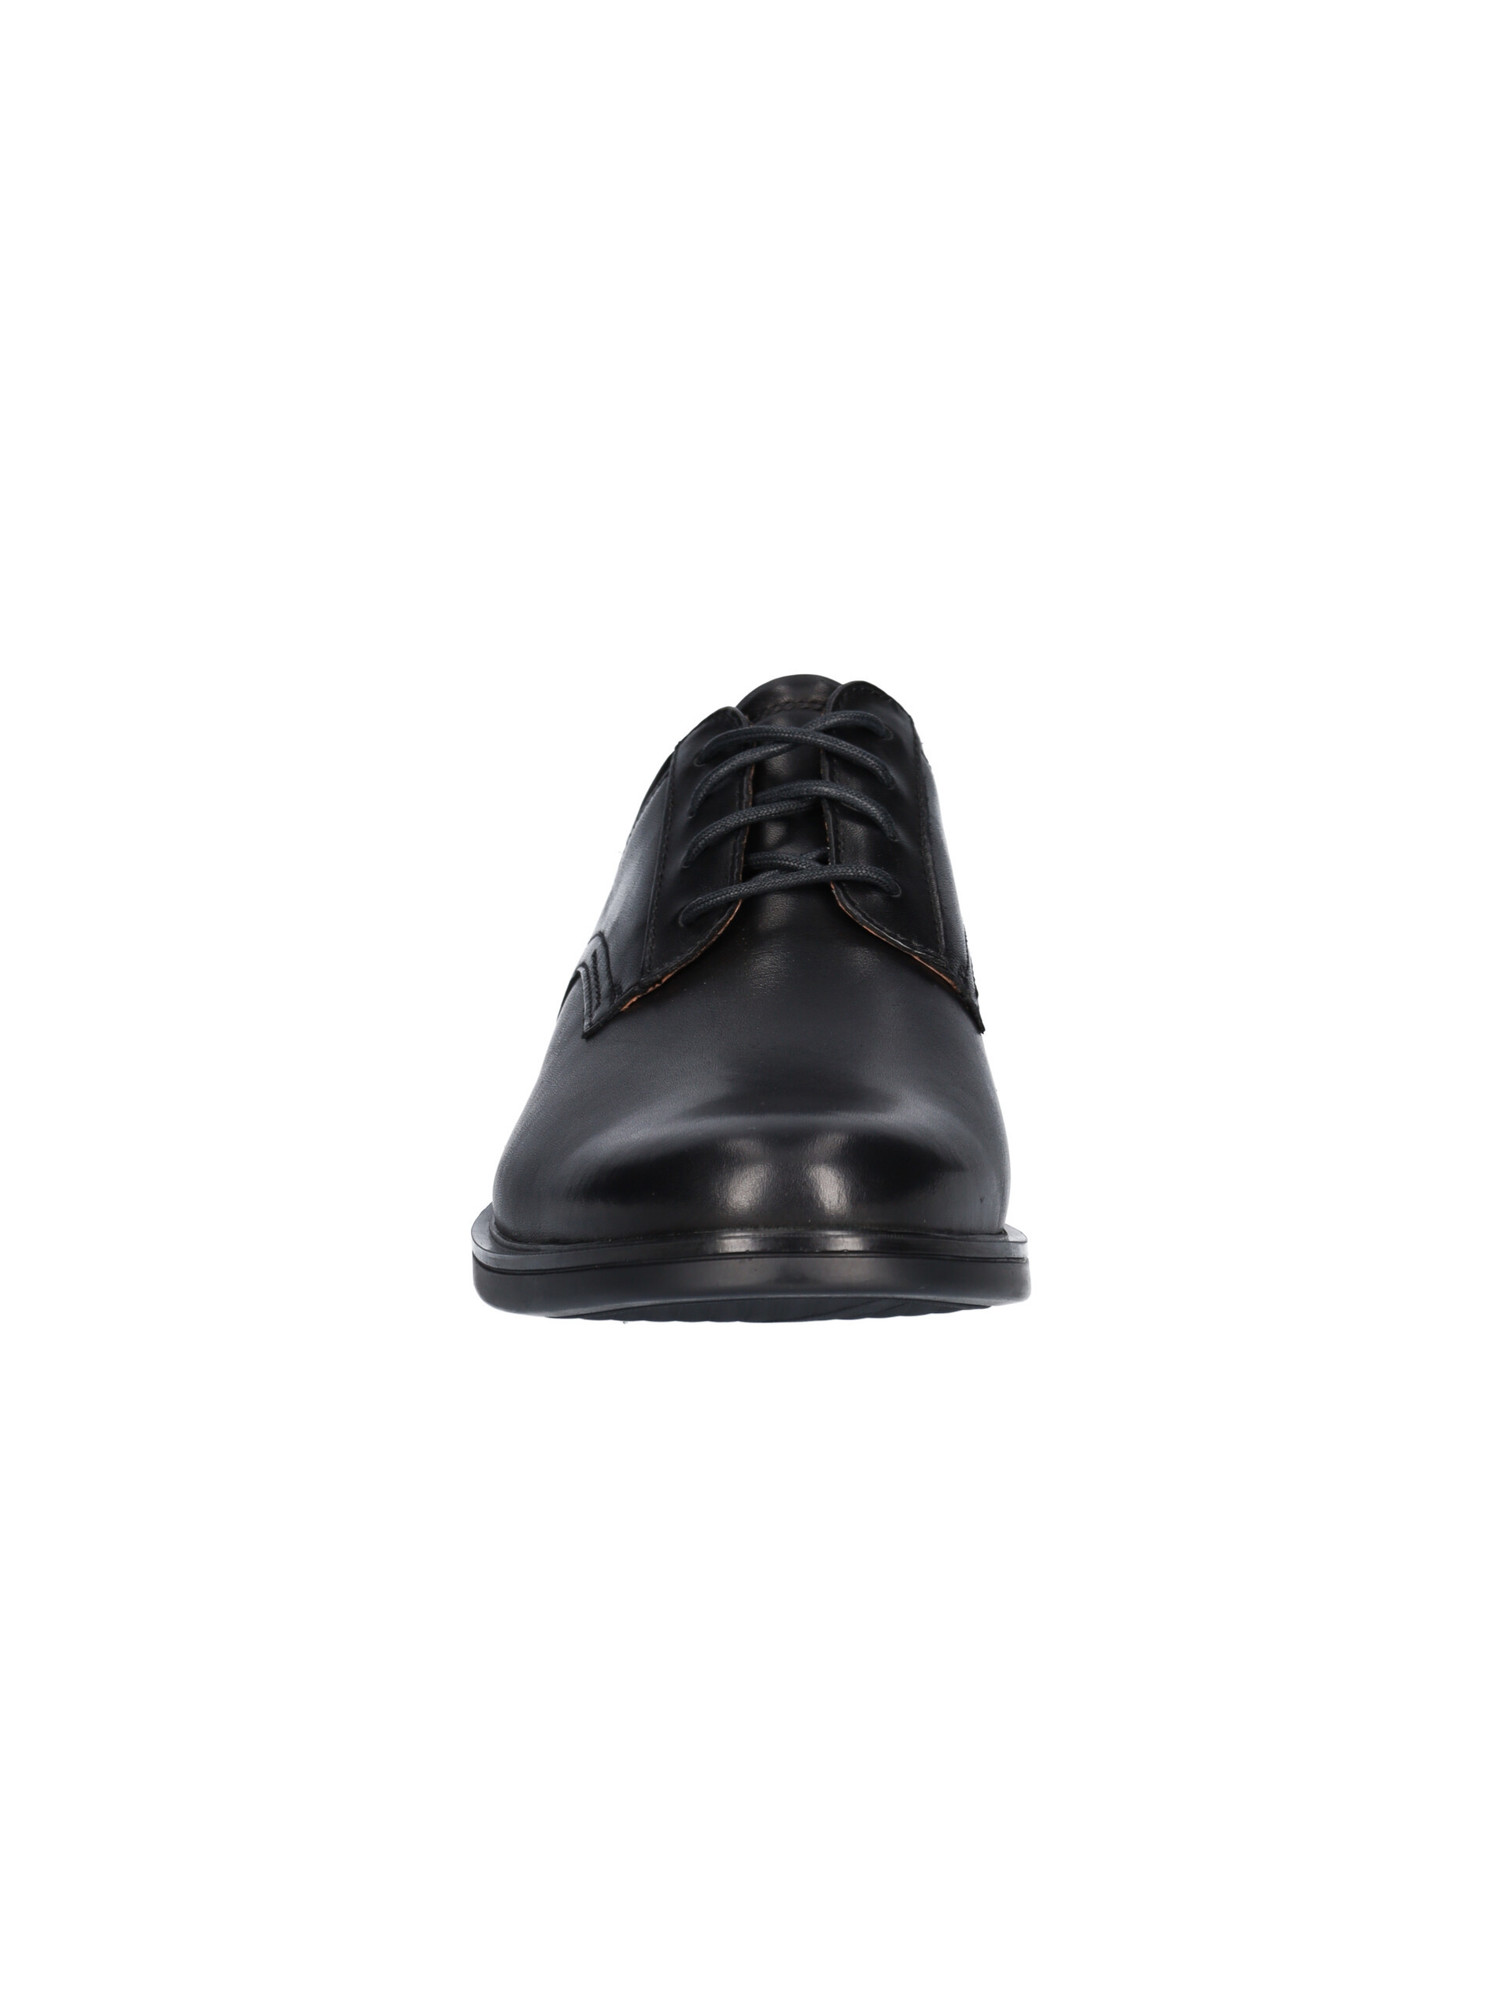 scarpa-semi-elegante-clarks-da-uomo-nera-7a1c8d